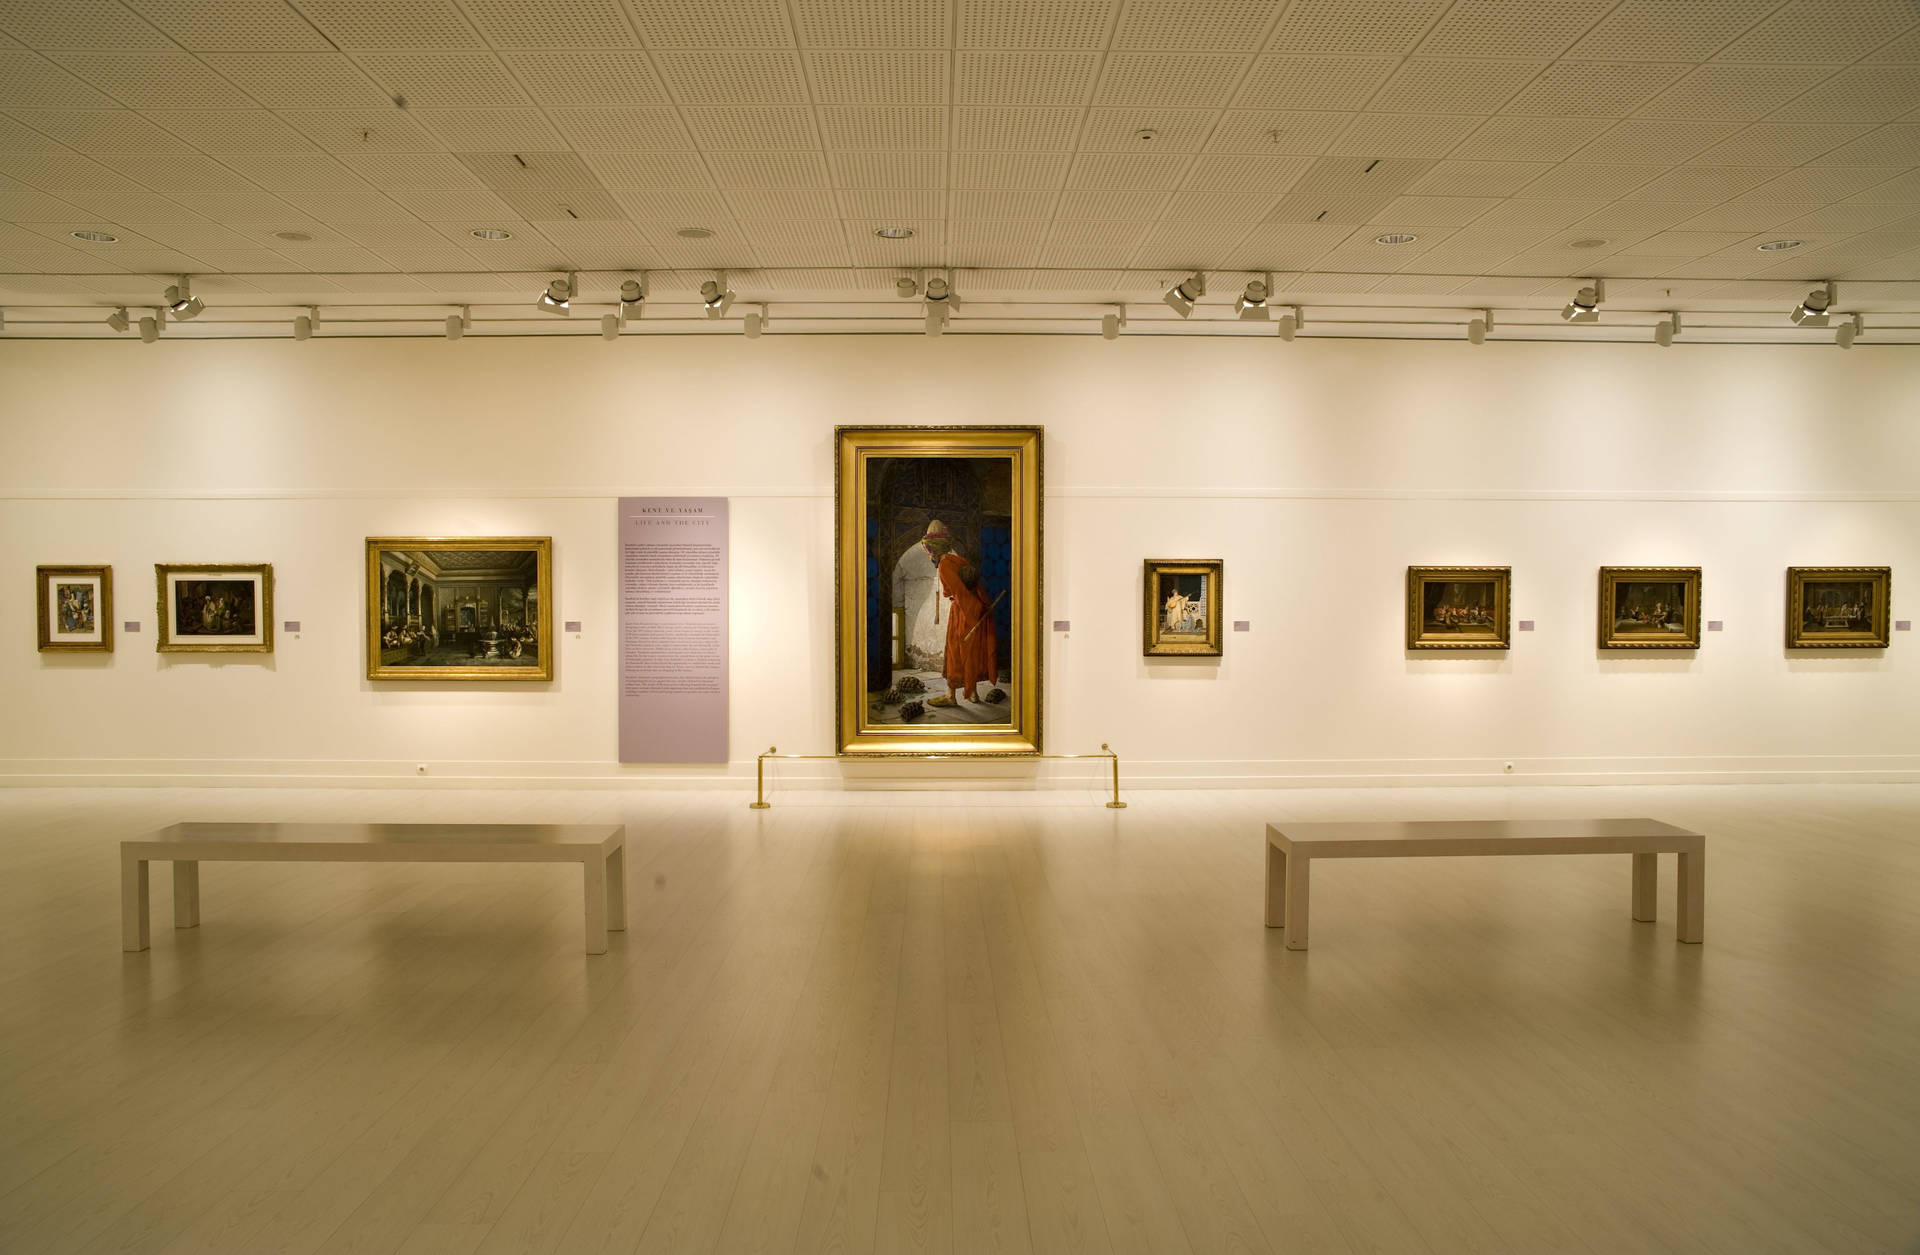 Rows Of Art Gallery Paintings